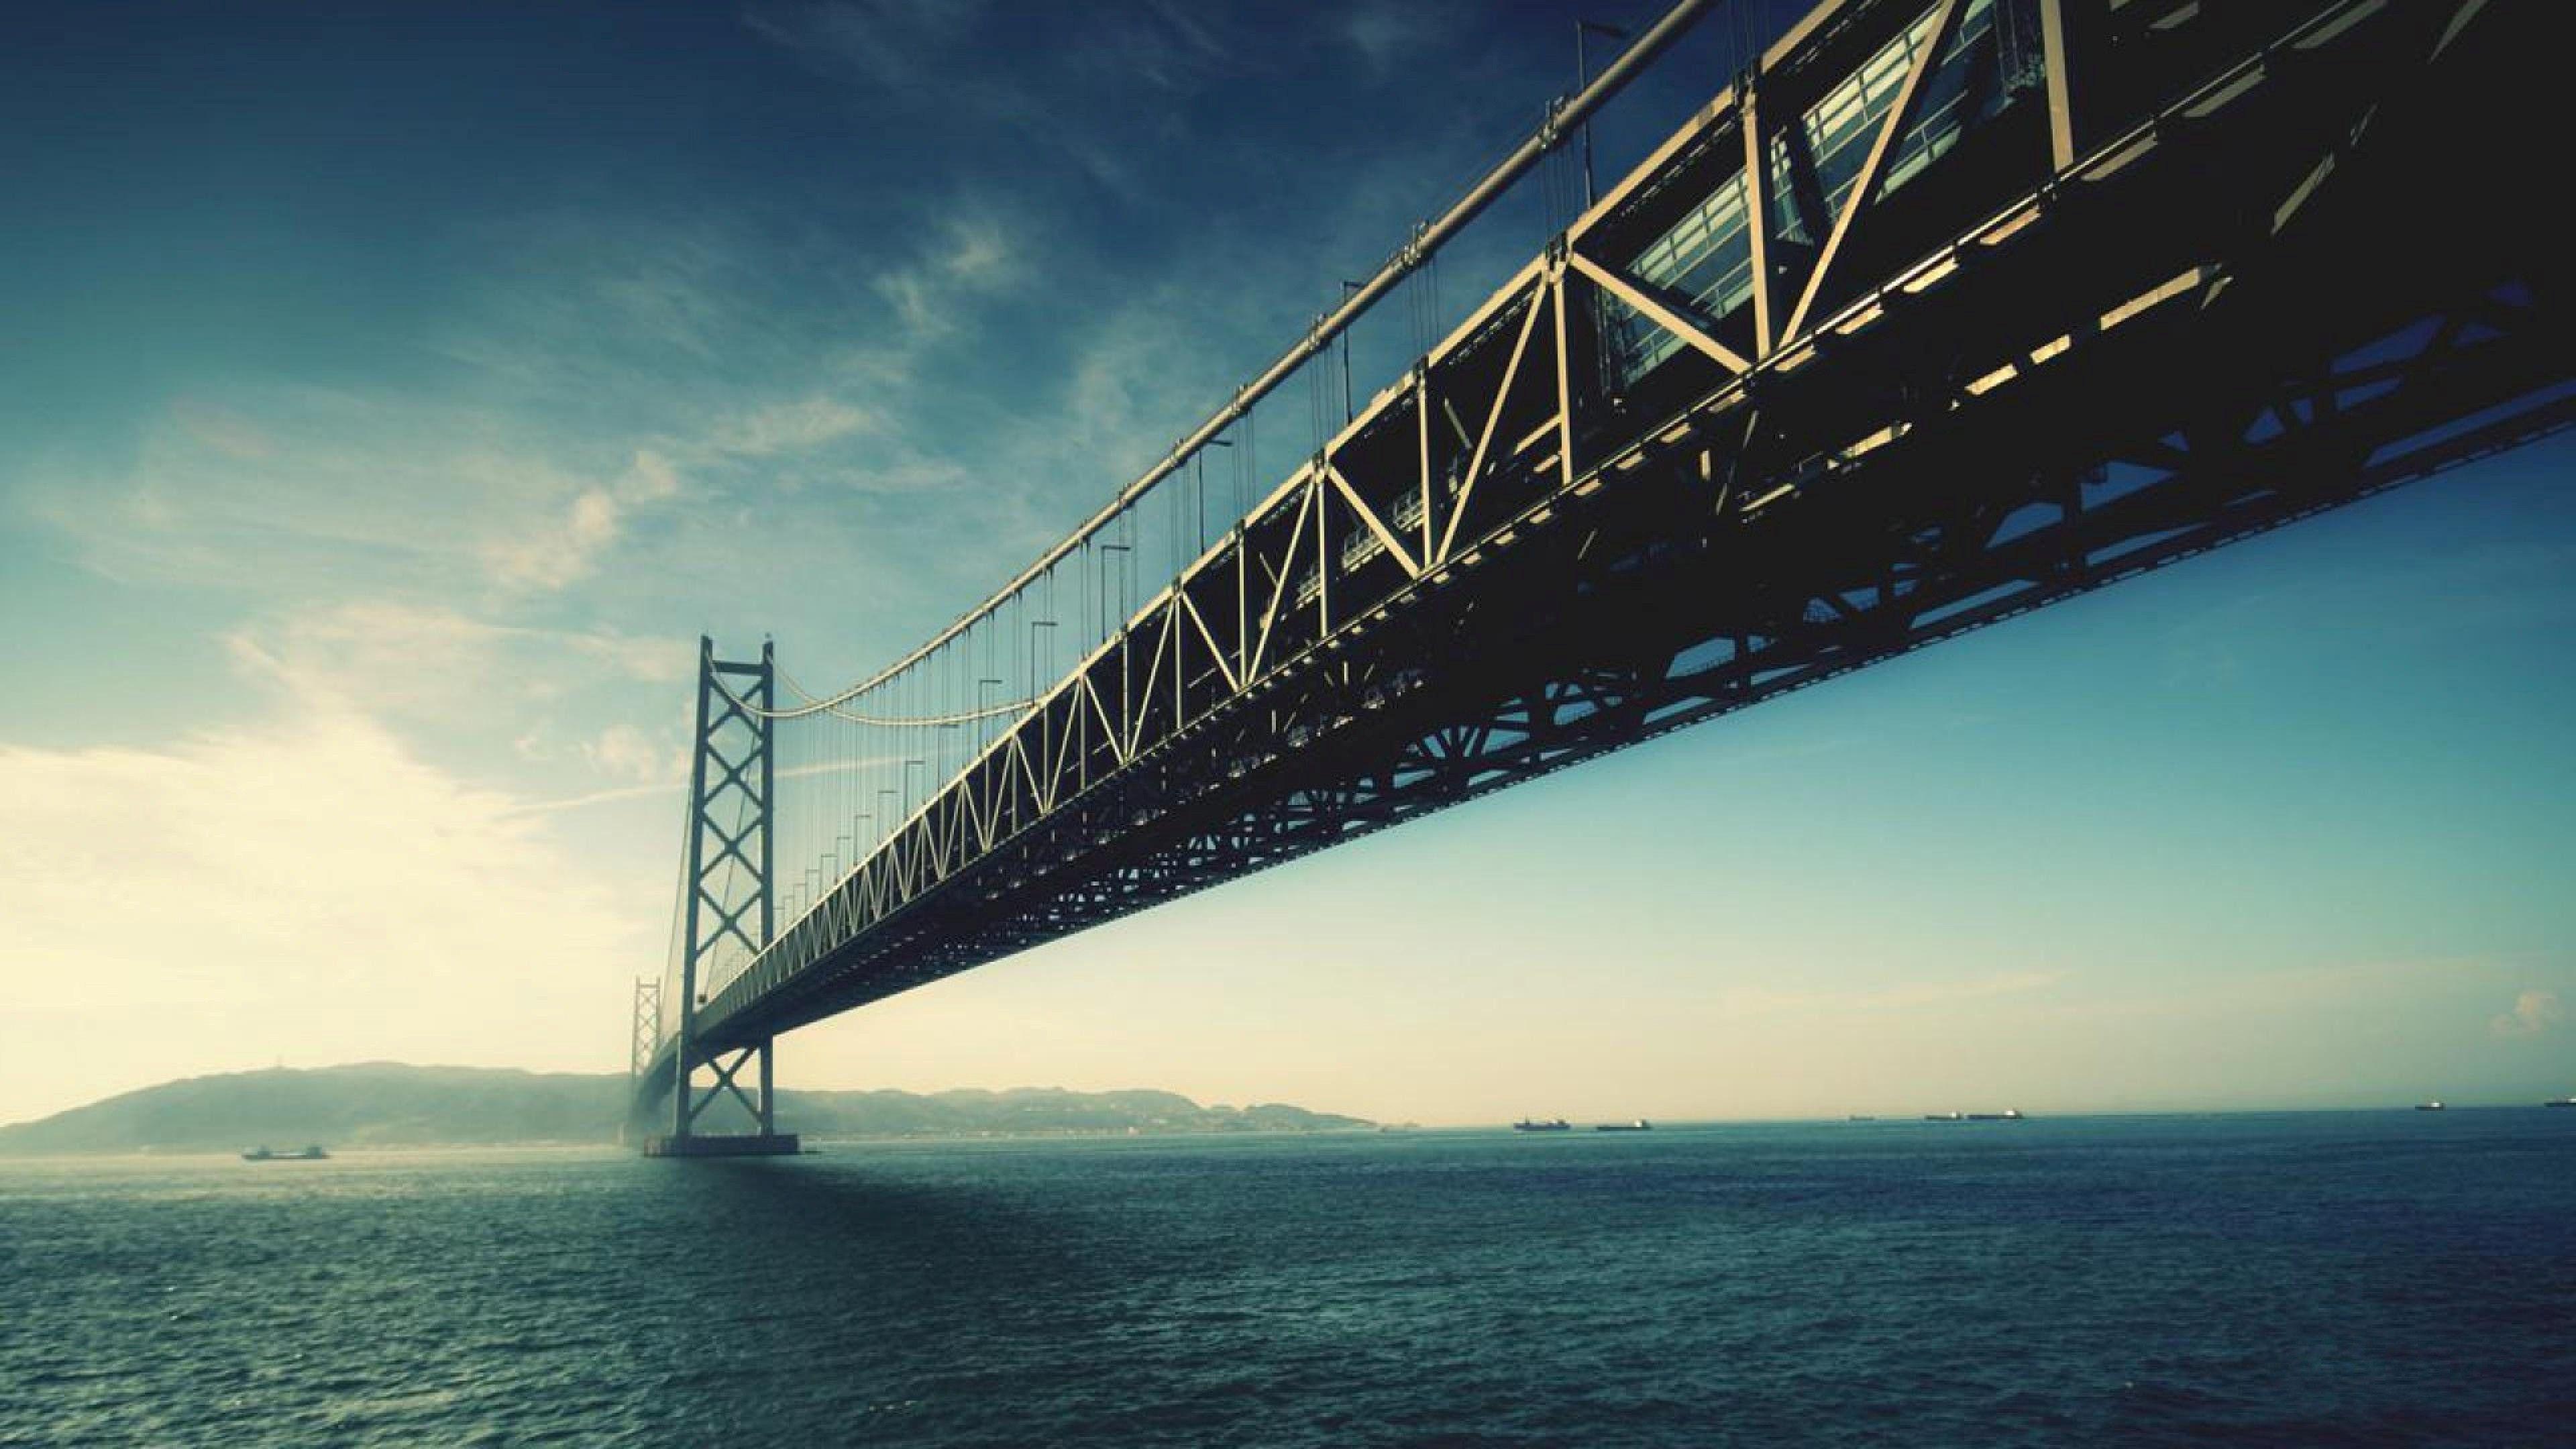 Golden Gate 4K Wallpapers  Top Free Golden Gate 4K Backgrounds   WallpaperAccess